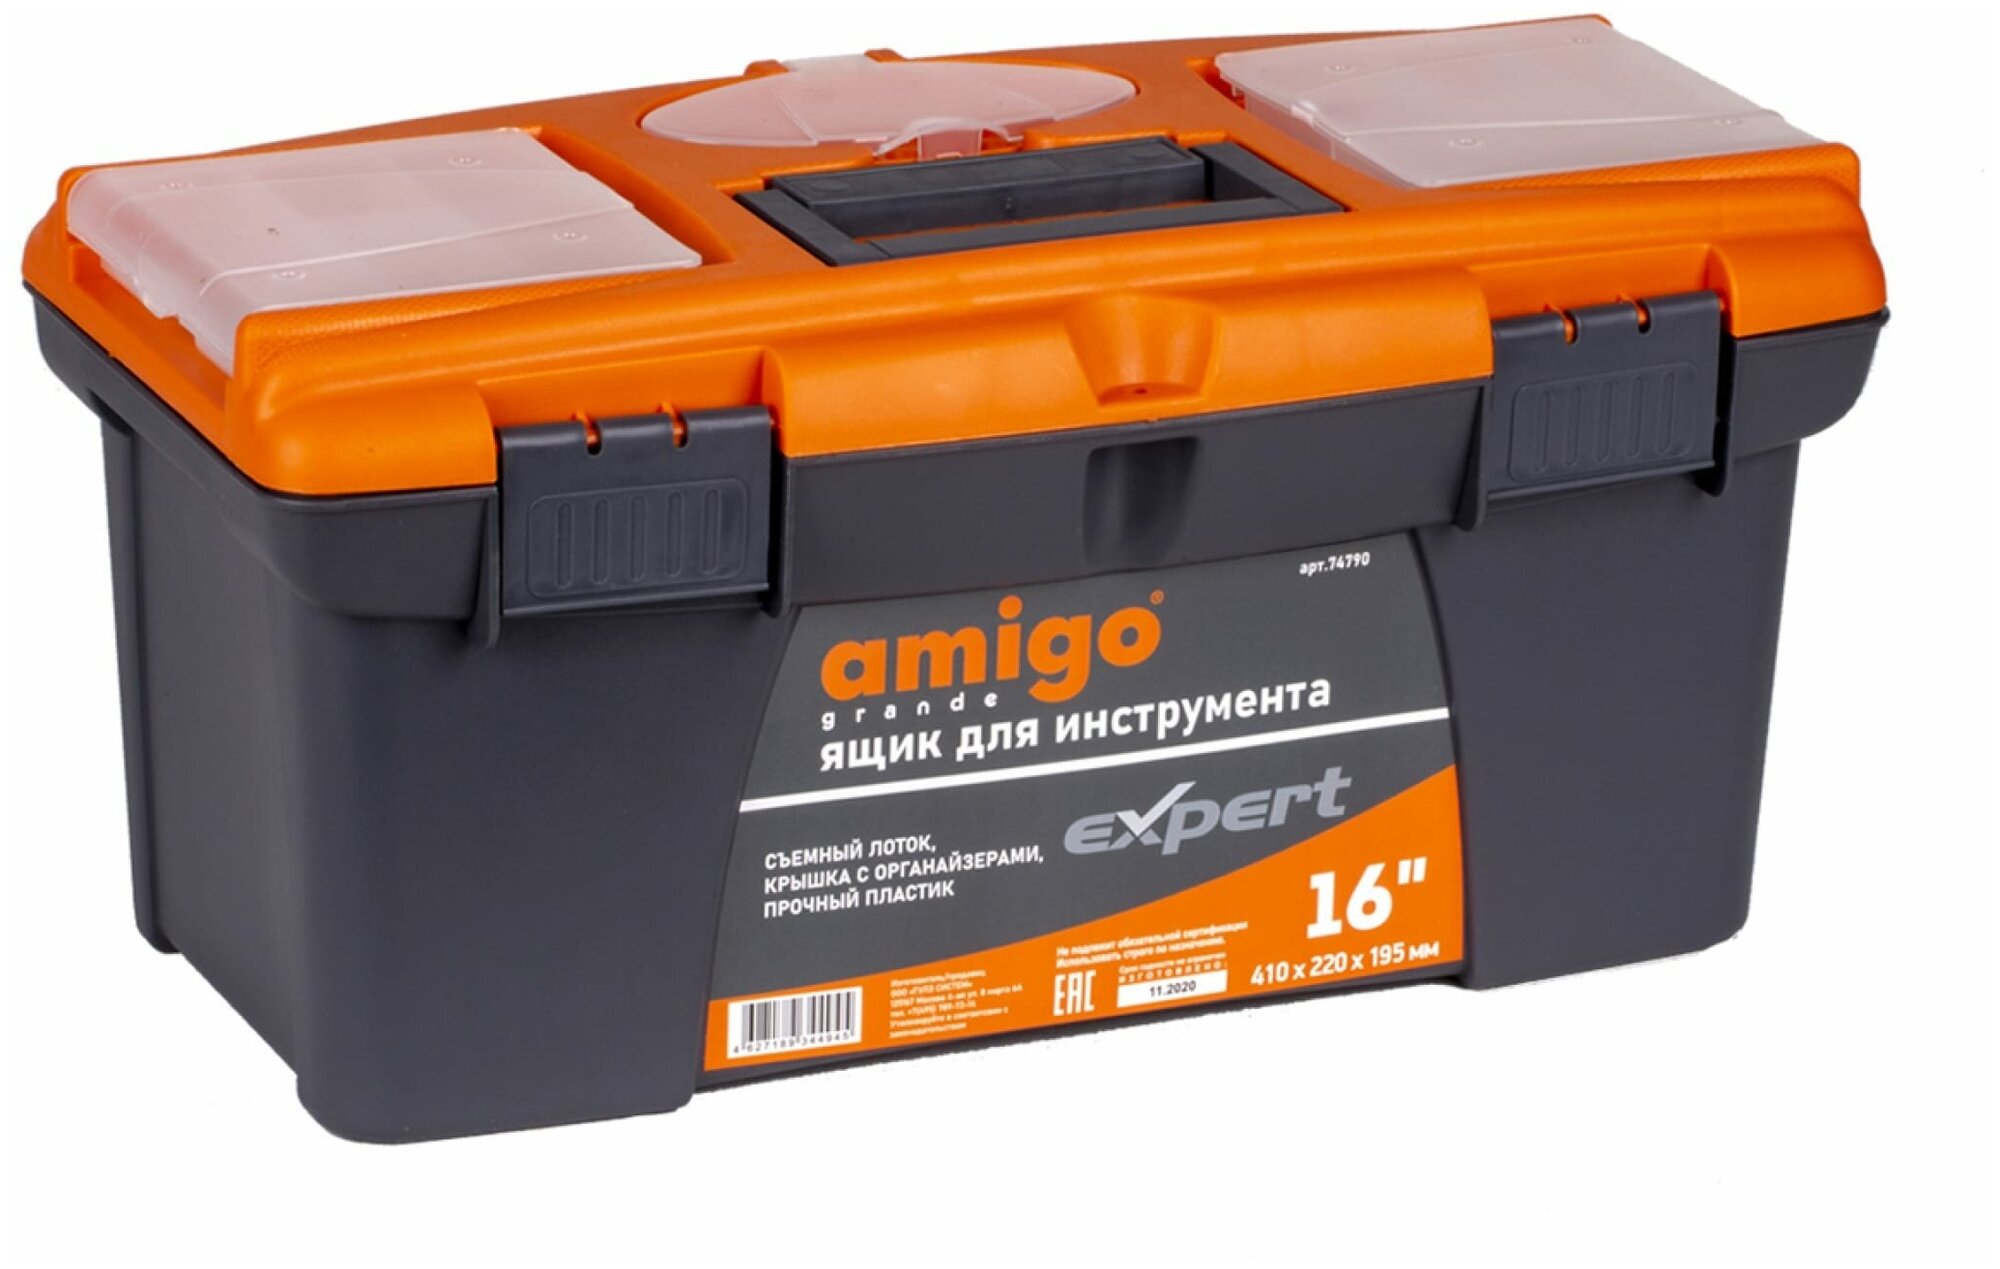 Ящик пластиковый для хранения инструмента 16" (41х22х19.5 см) AMIGO 747904